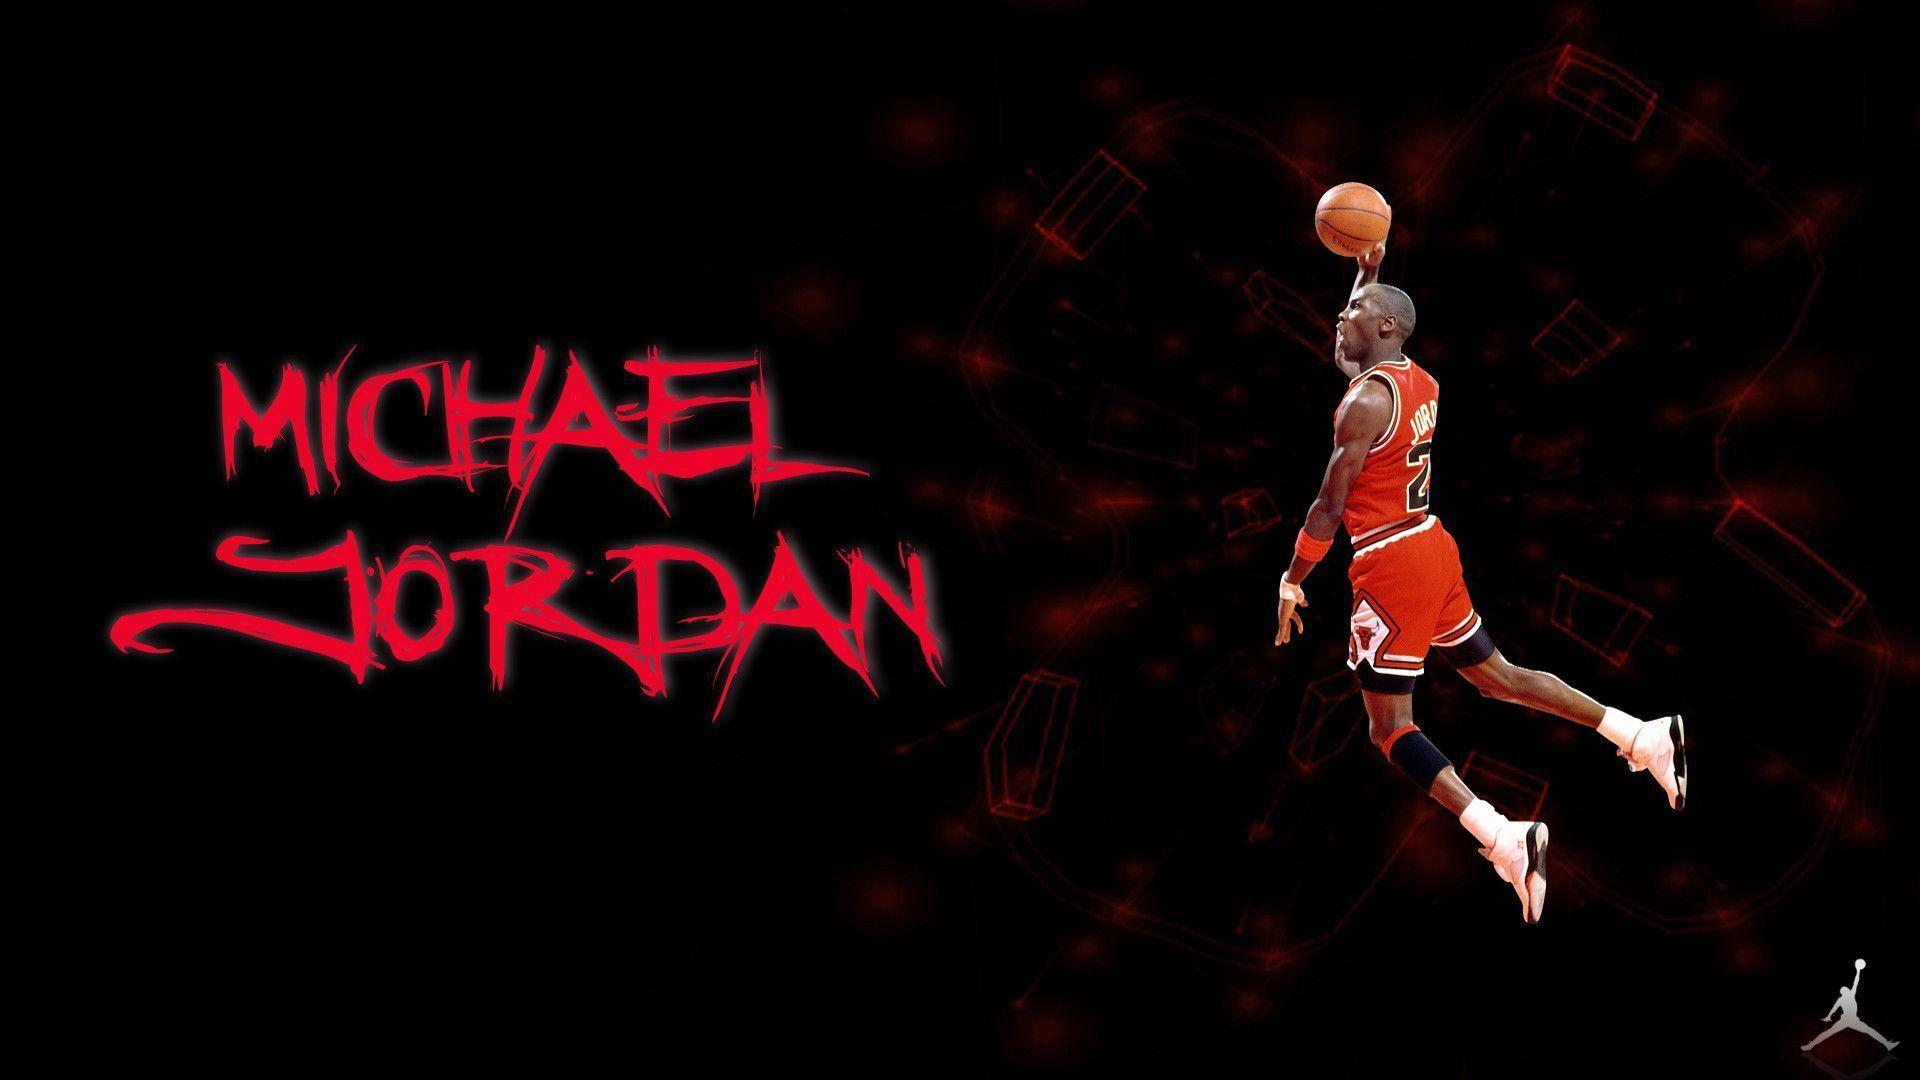 Michael Jordan Logo Wallpaper Image 6 HD Wallpaper. Hdimges